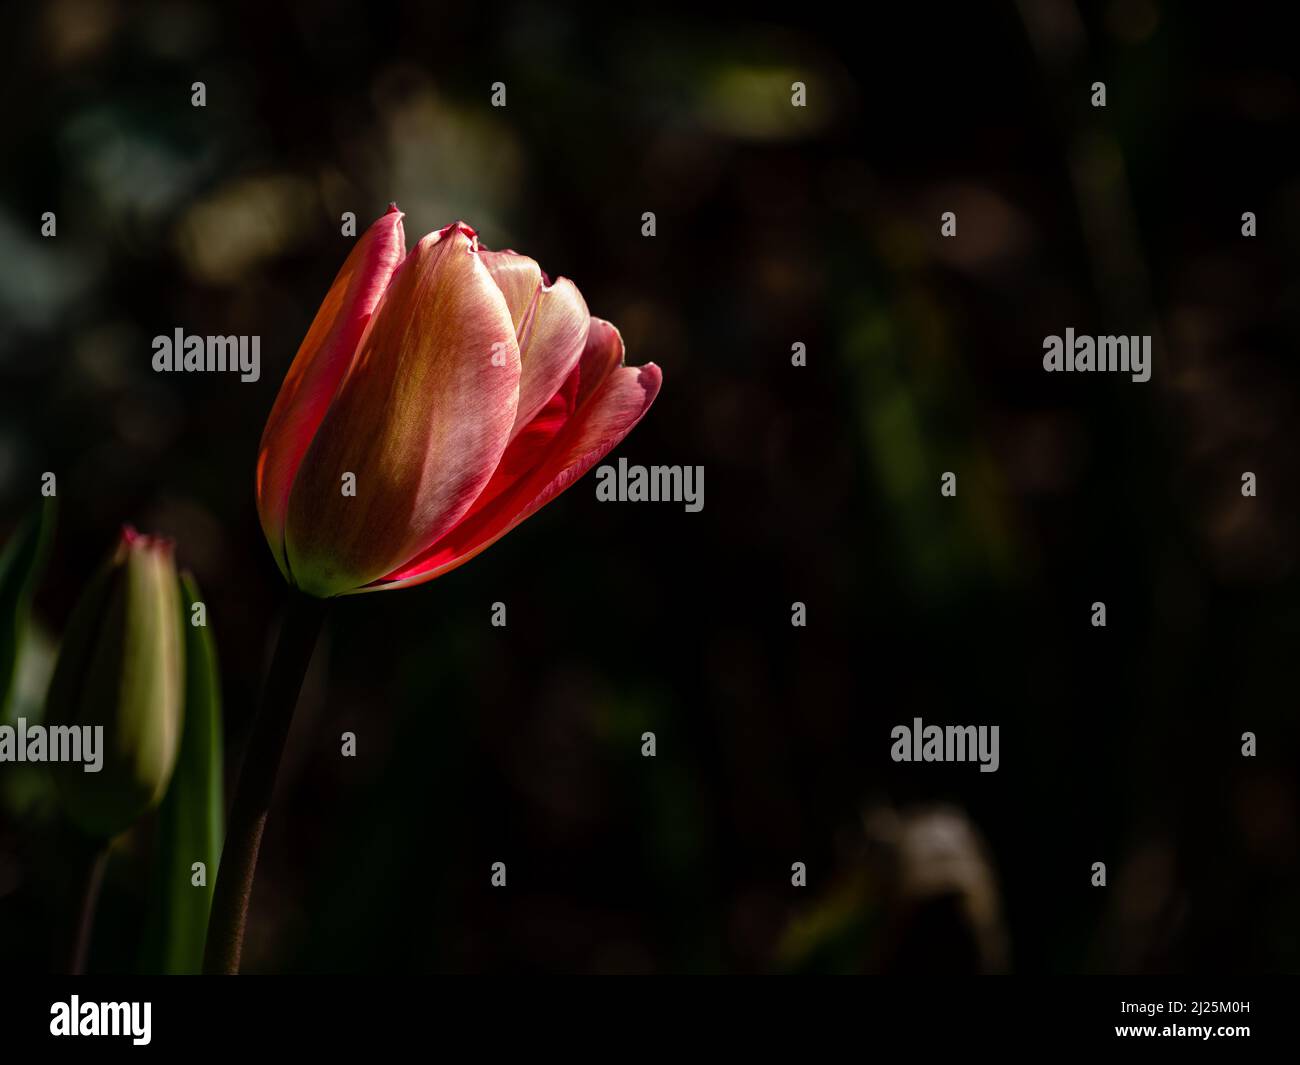 A single tulip in a garden, England Stock Photo